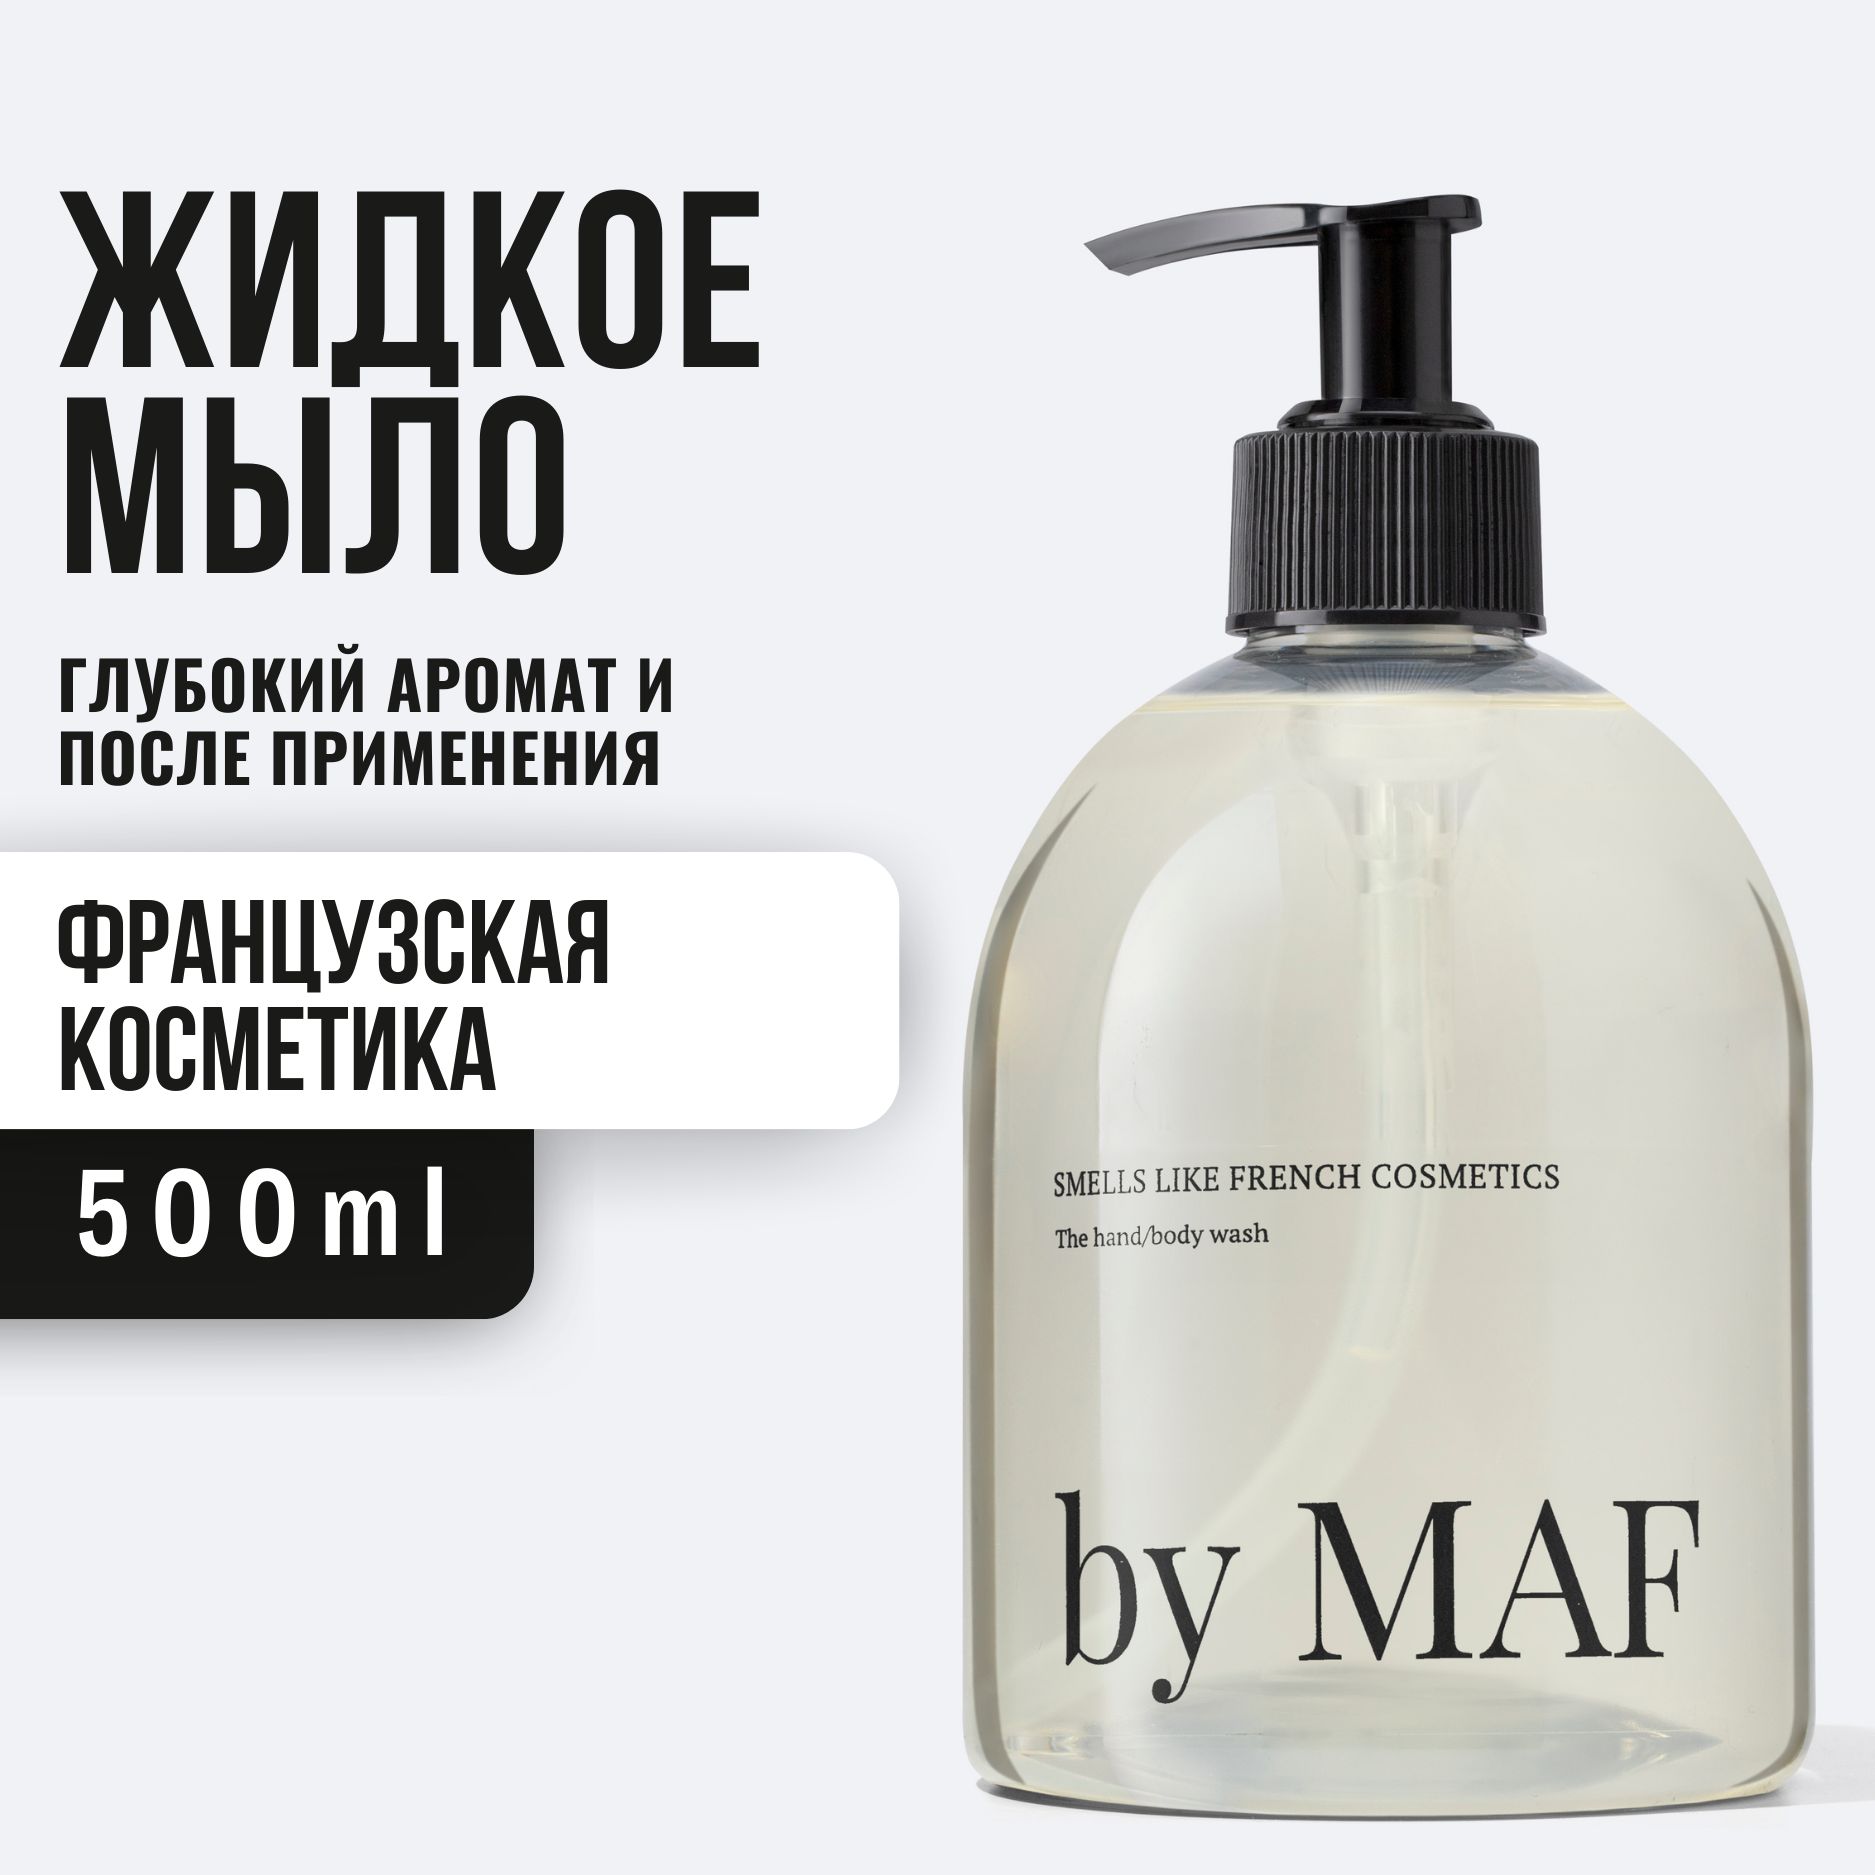 By MAF гель для душа. By MAF smells like French Cosmetics купить.